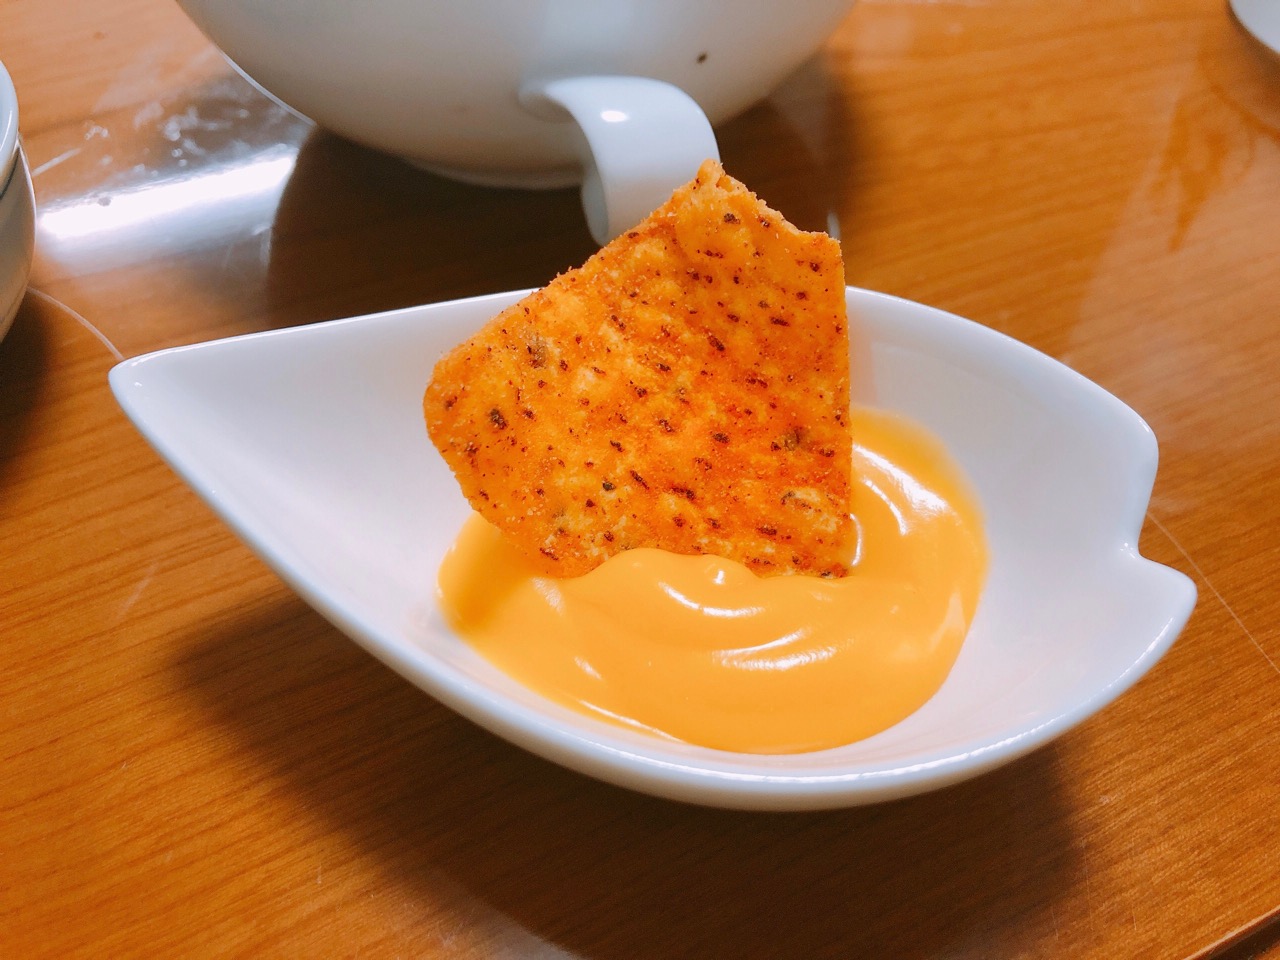 映画館で食べるナチョスのチーズソースが家でも食べたい ナチョチーズソースいろいろ検証して作ってみた結果 Suisuisuizoo